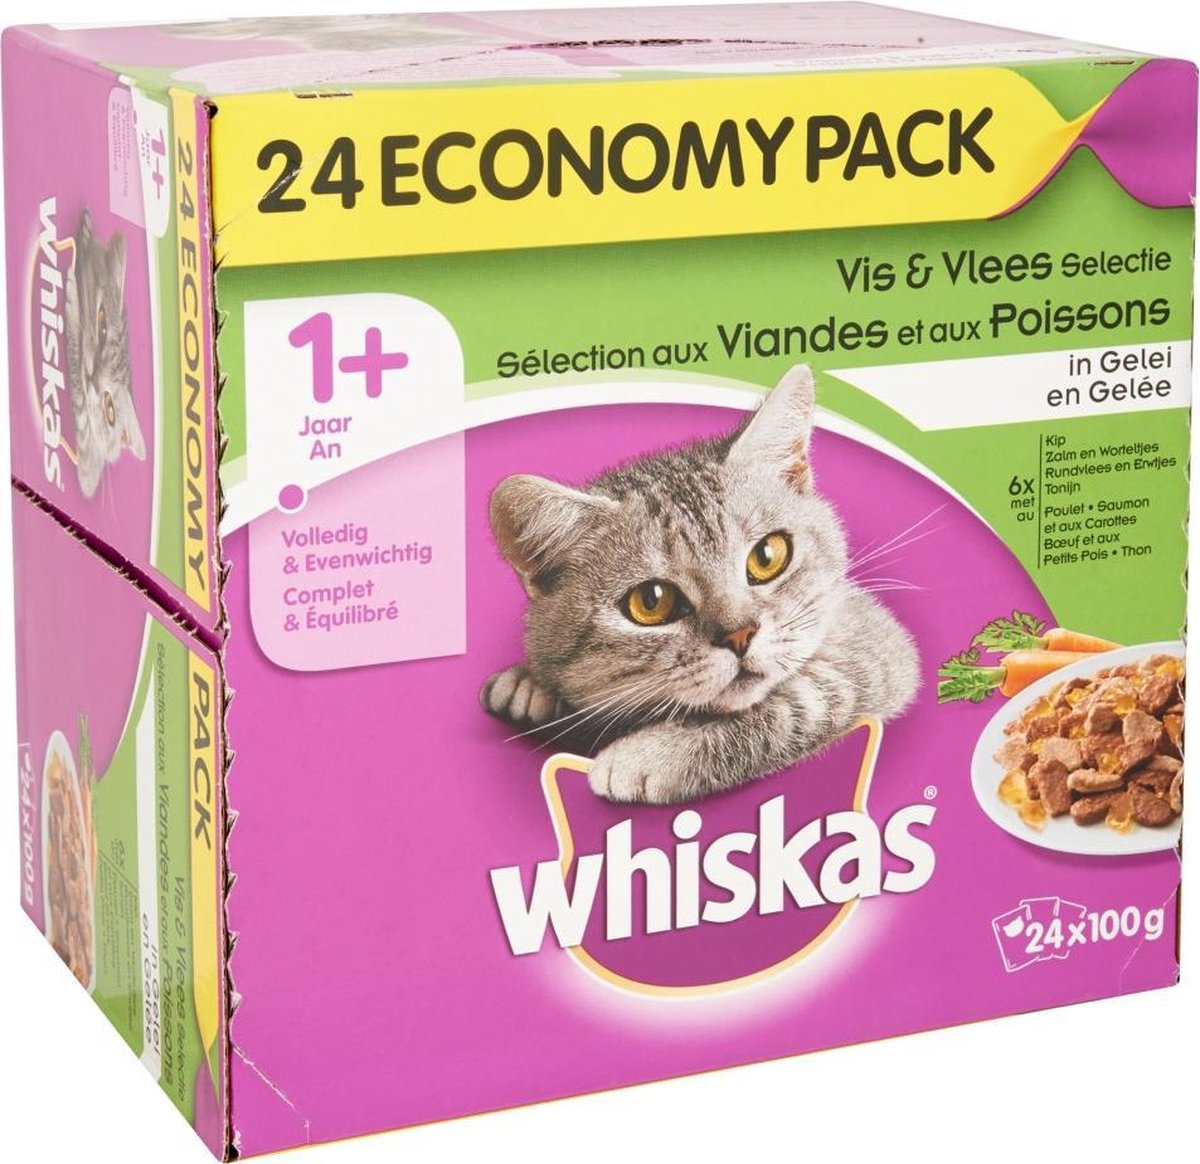 Nourriture sèche pour chats Whiskas Sélections de viande, 9,1 kg